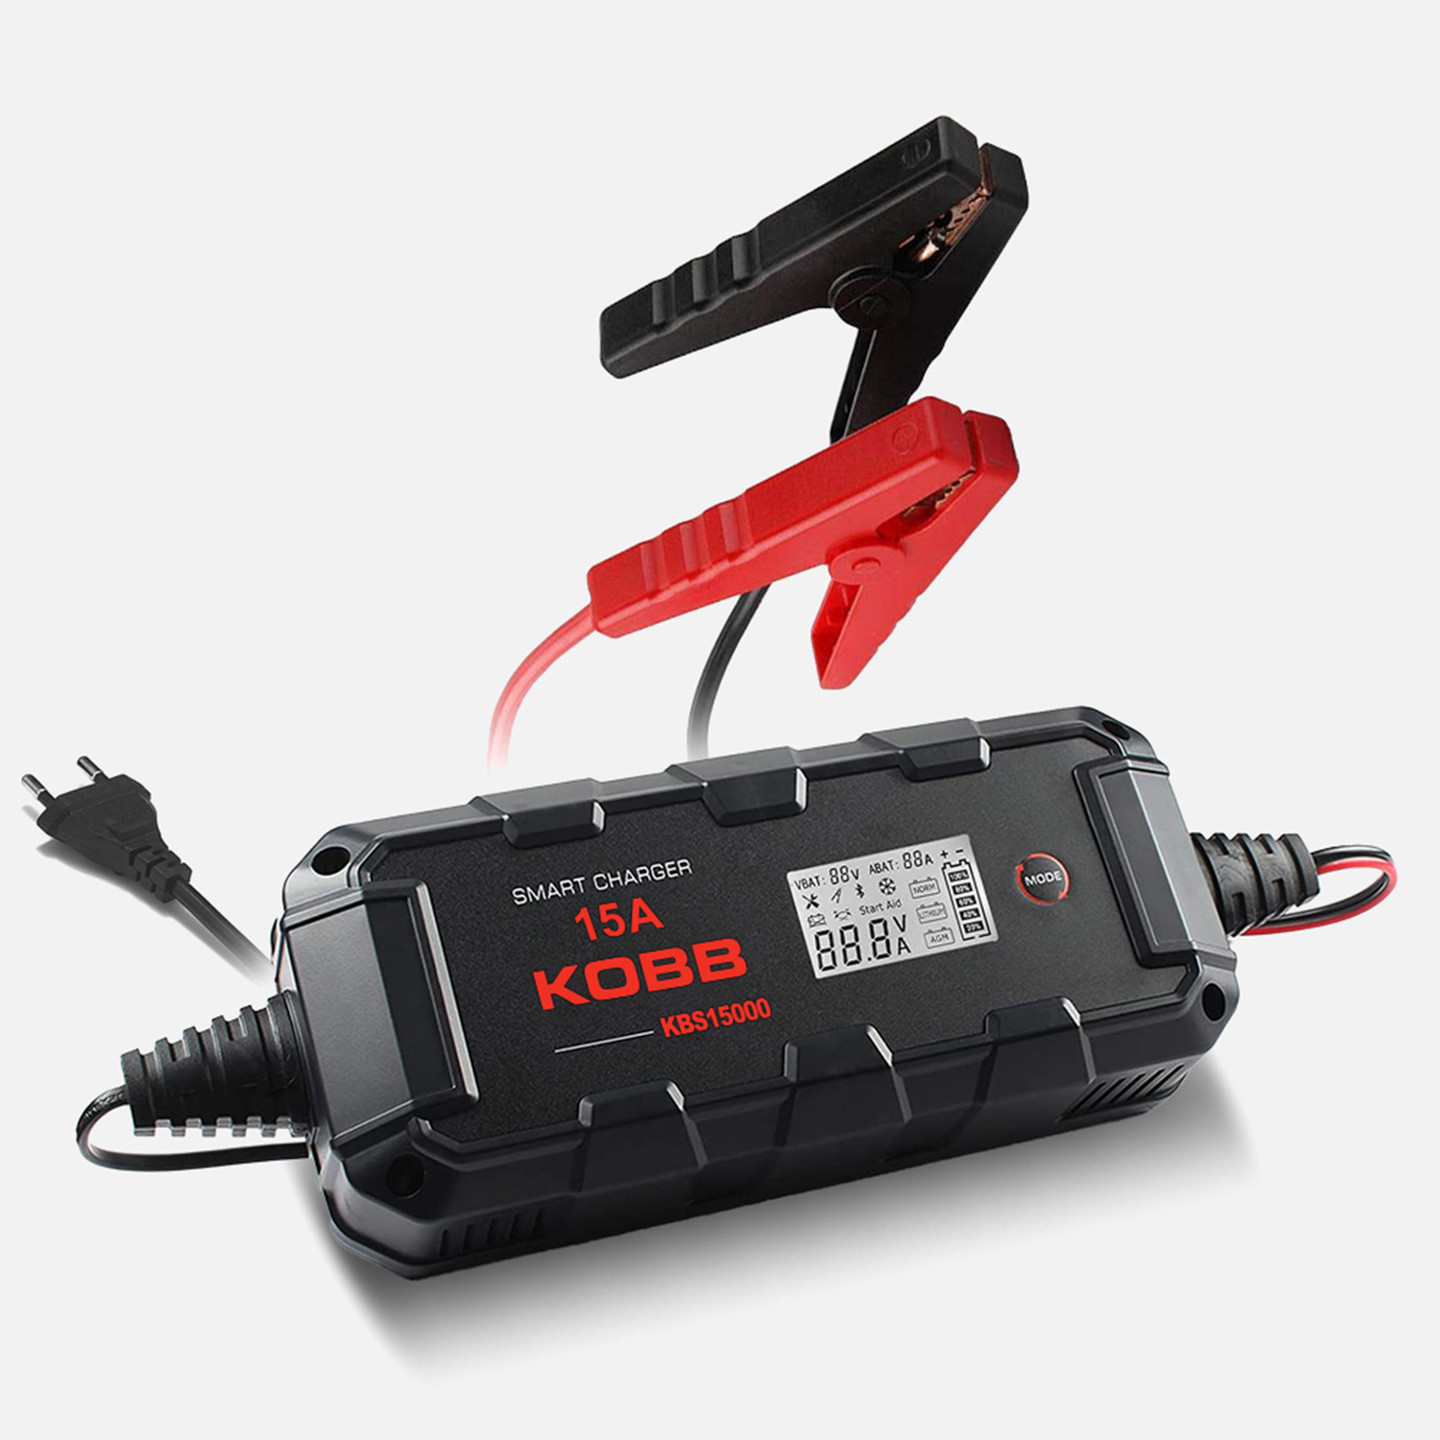 Kobb Kbs15000 6V/12V/24V 300A Akıllı Dijital Akü Şarj ve Akü Bakım Desülfatör